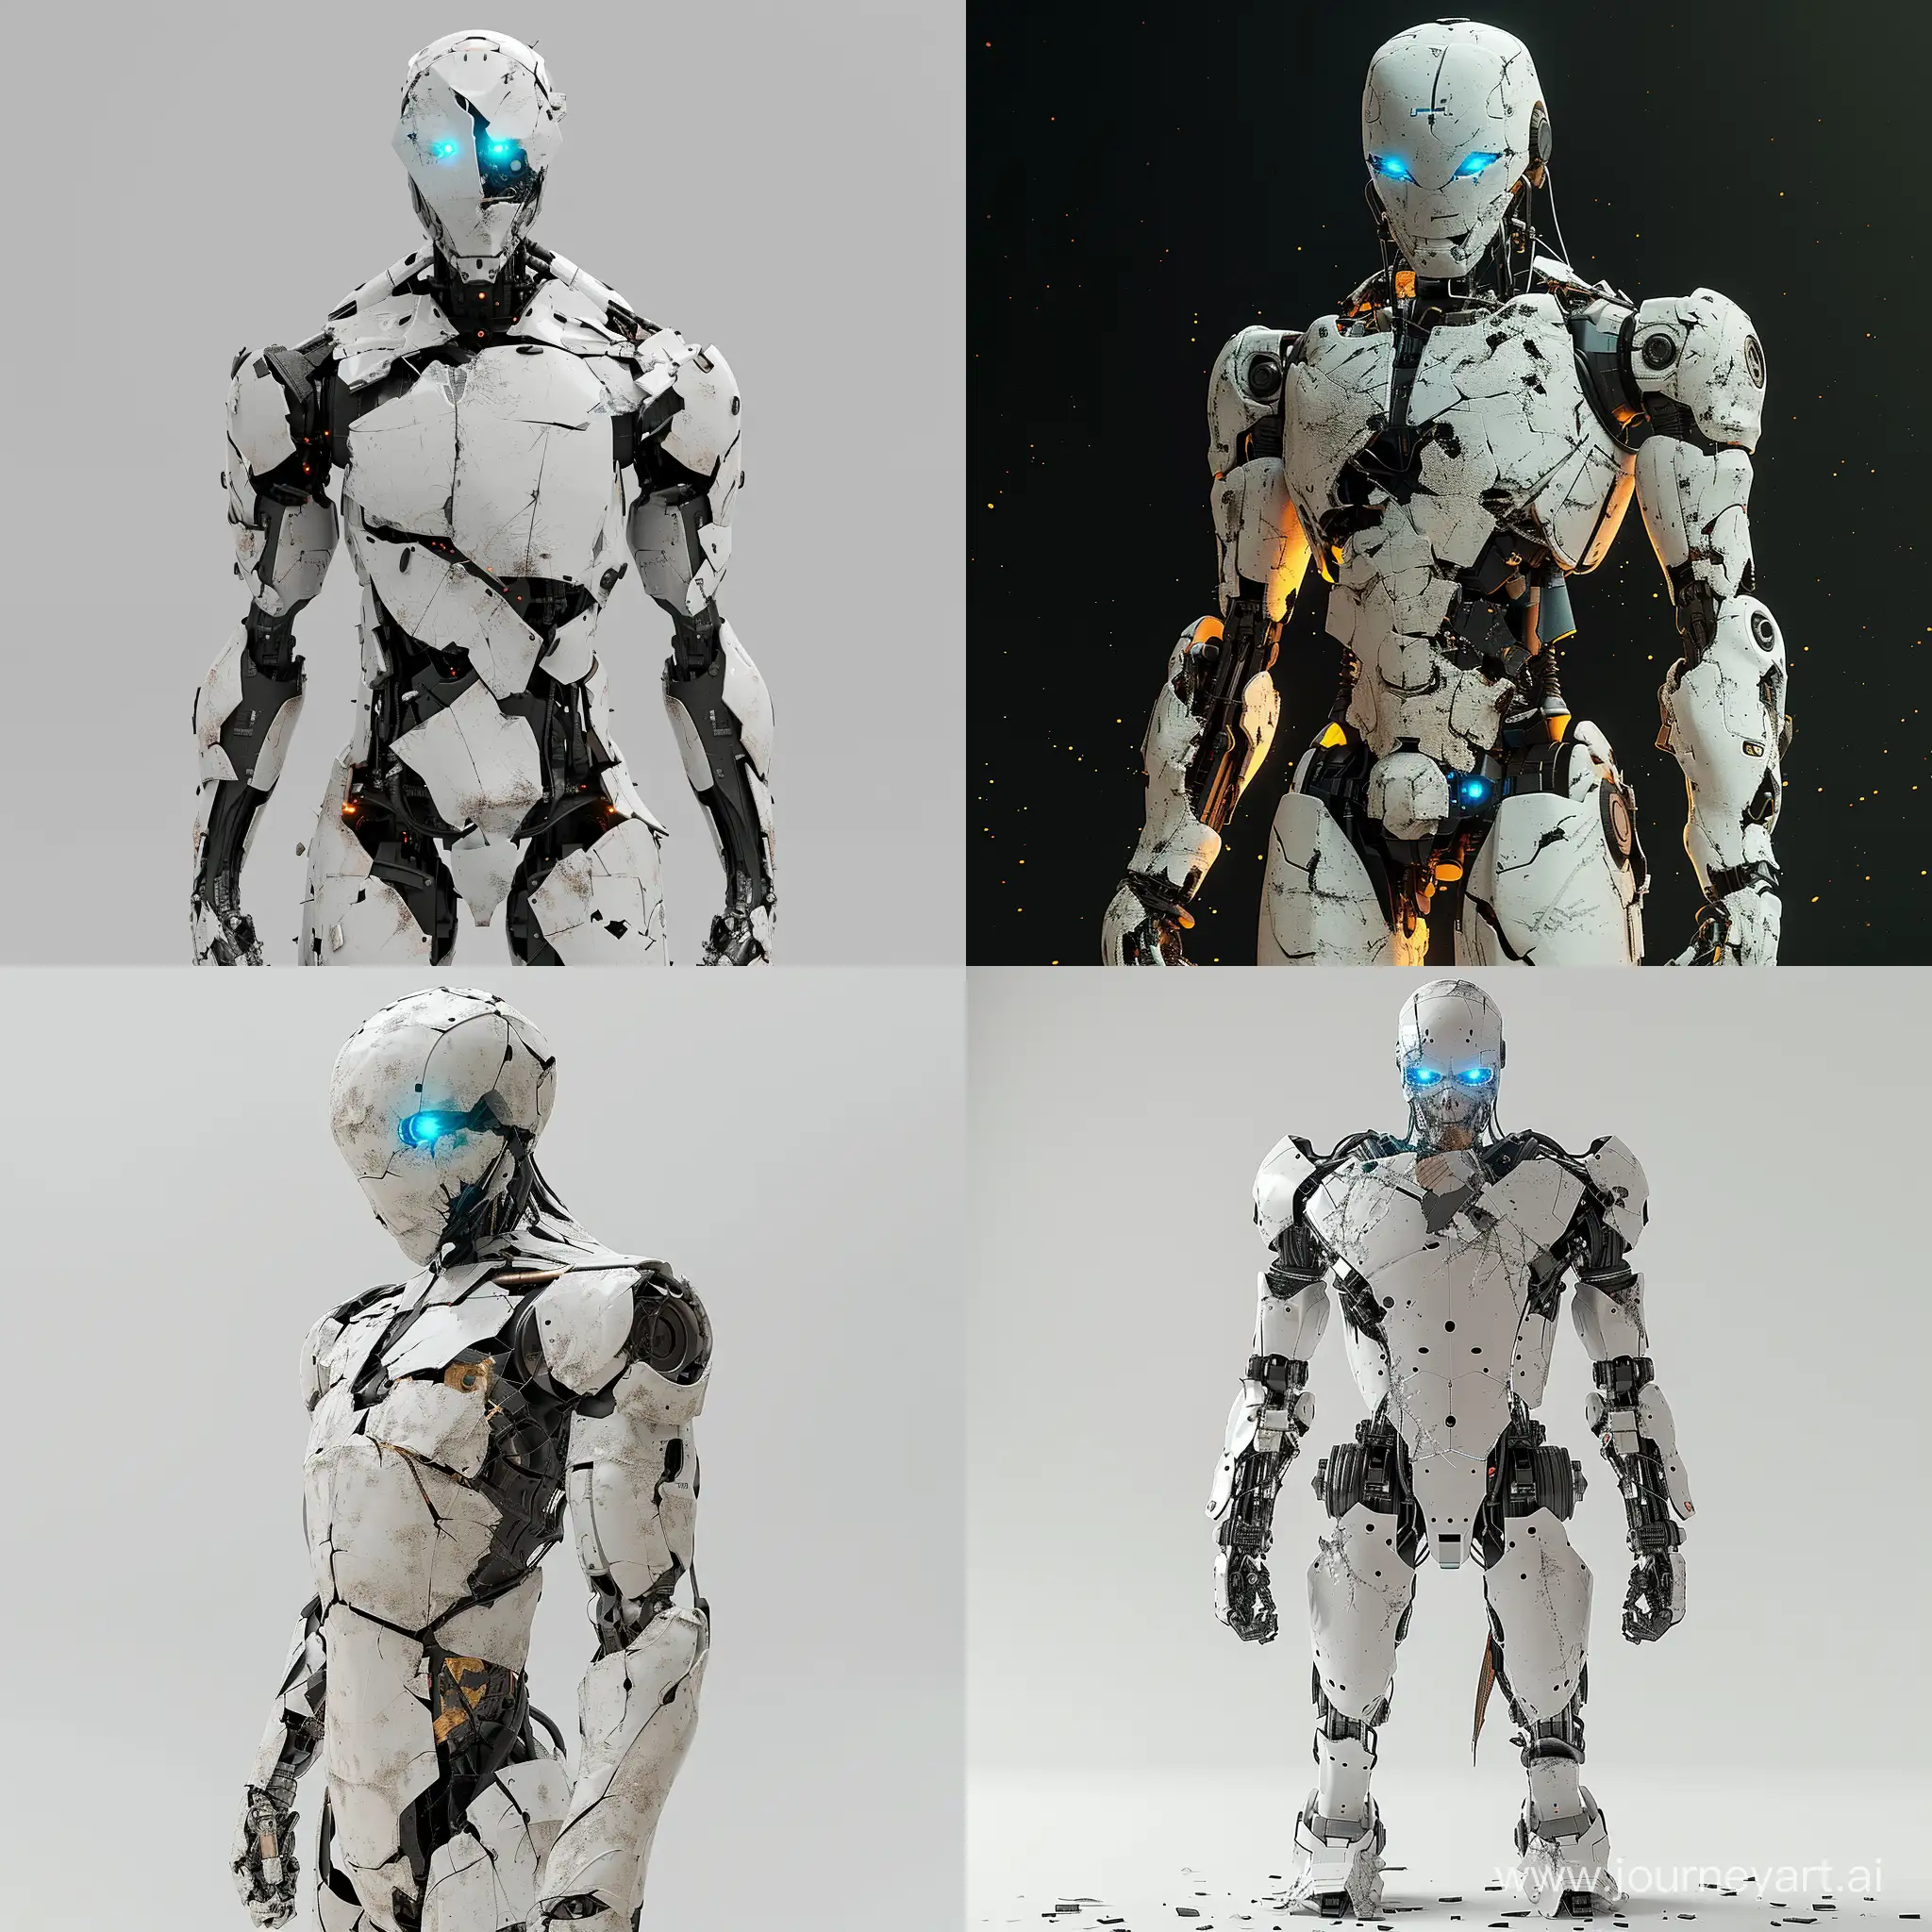 Робот стоит в полный рост со светящимися голубыми глазами, робот сломанный, поломанный робот, стоит в интересной необычной позе, 8K, V-ray, realism, --s 150